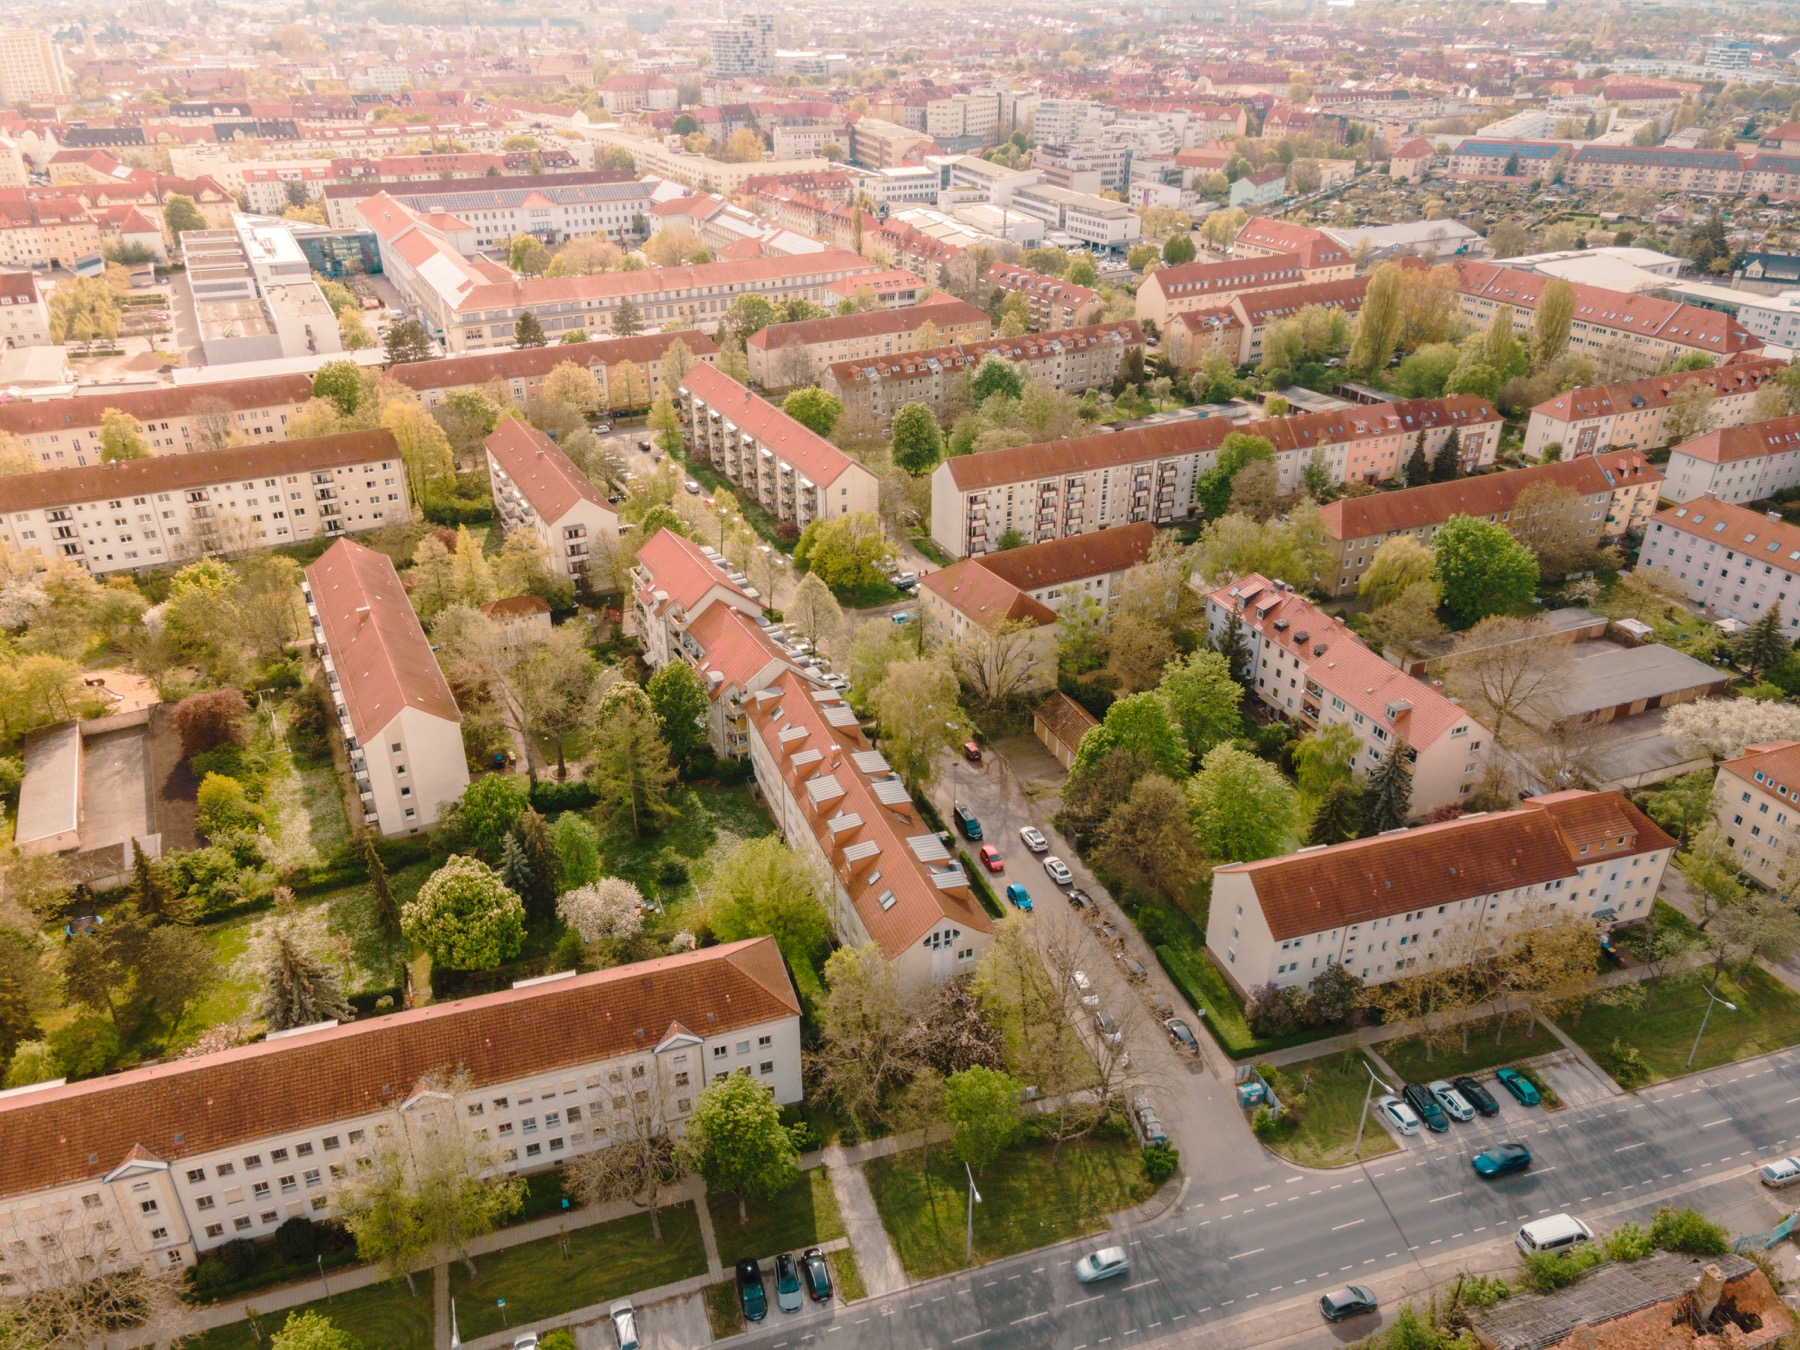 Überblick über ein Wohnviertel mit vielen Grünflächen zwischen den Gebäuden